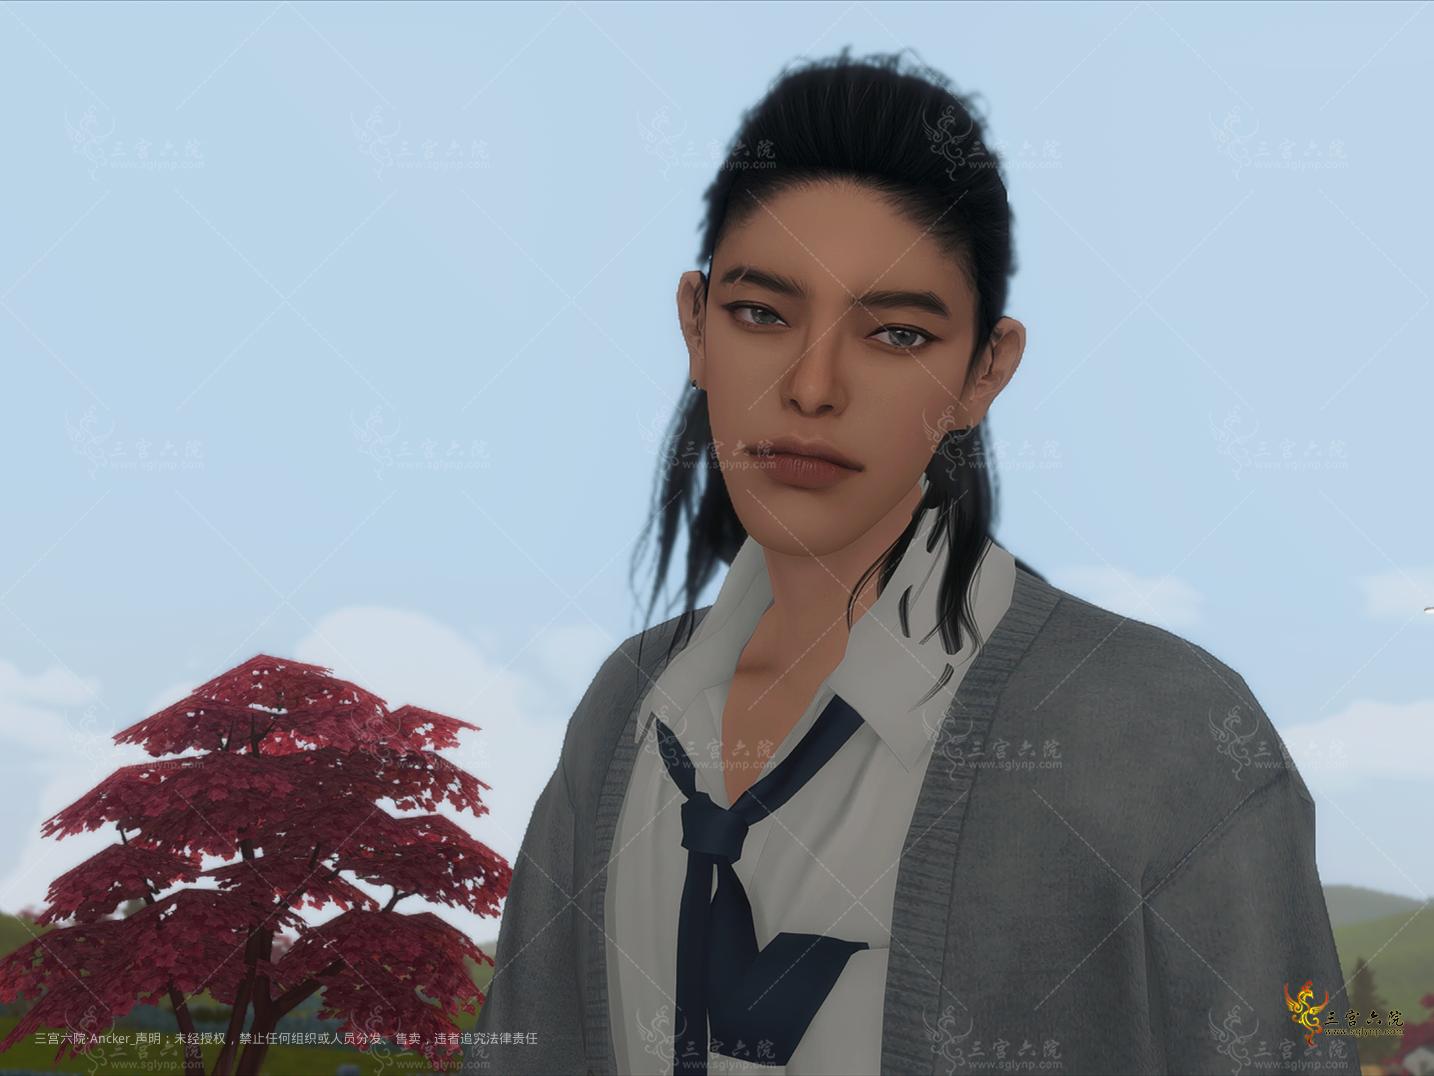 Sims 4 Screenshot 2022.05.12 - 20.19.12.90_副本.png